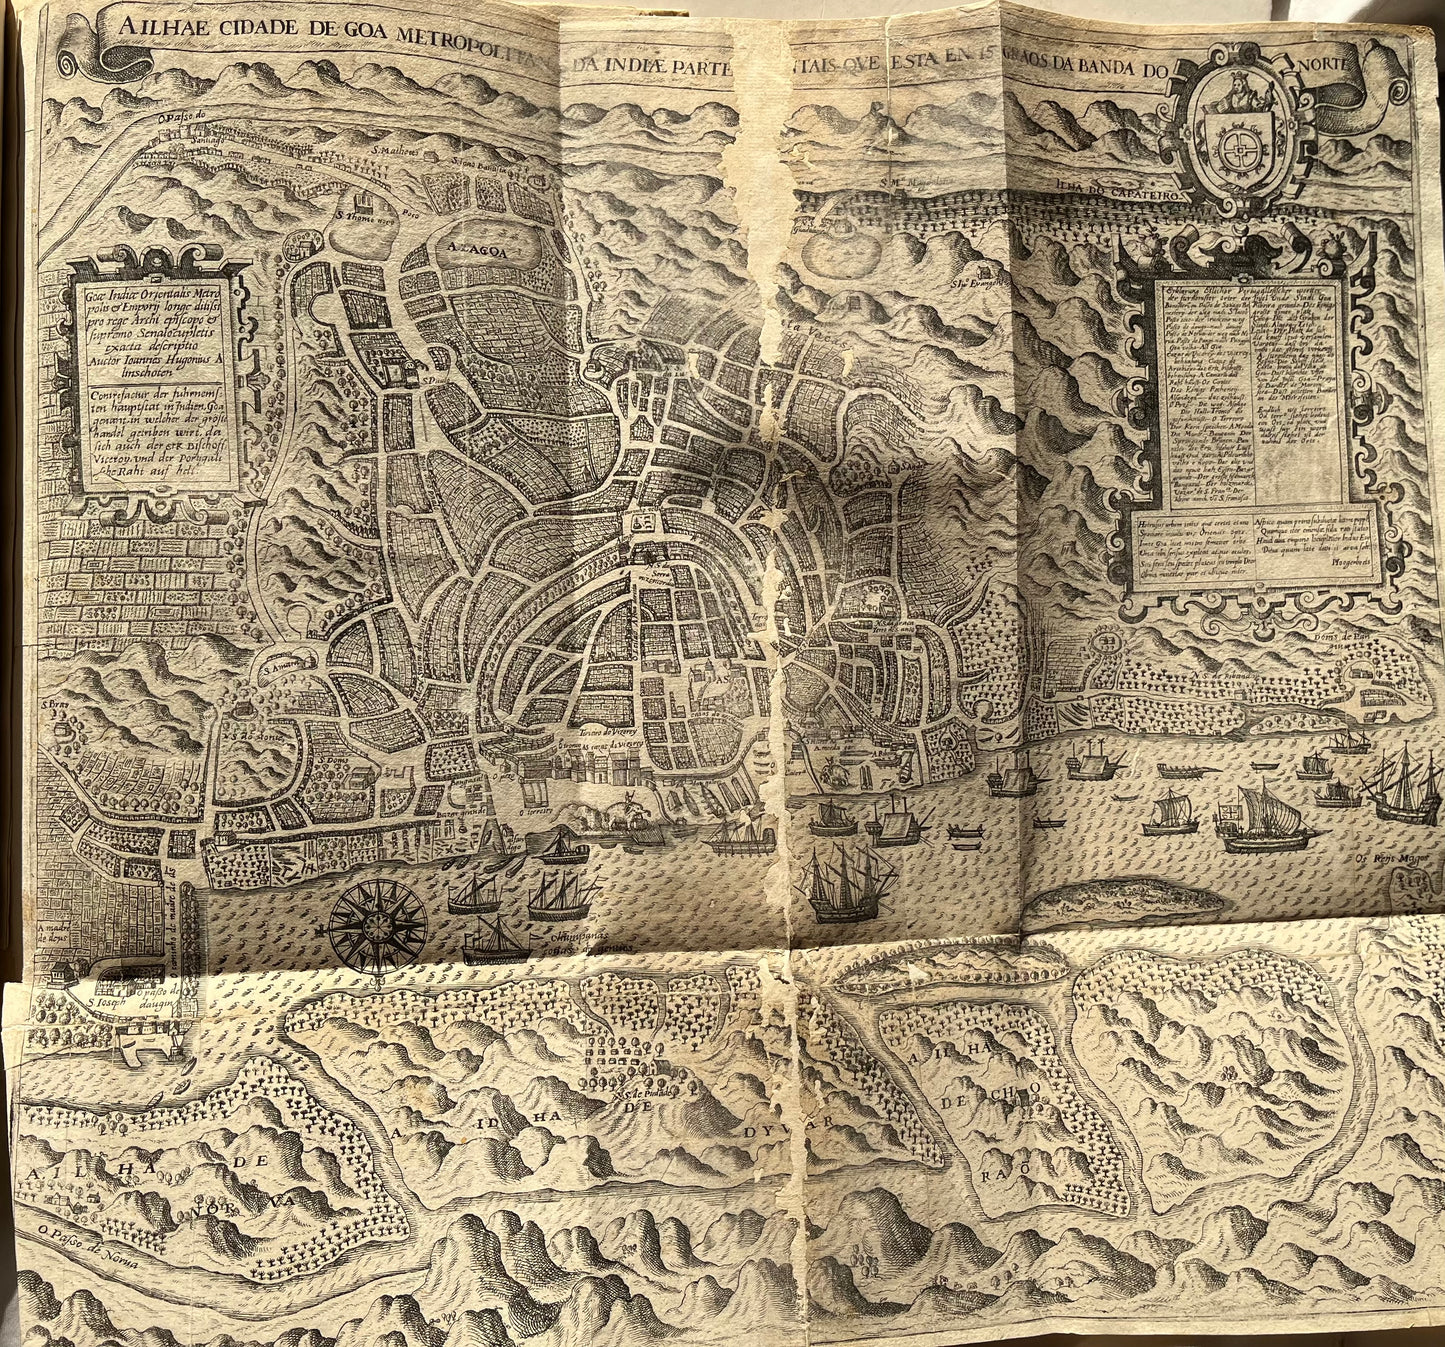 Linschoten - Part 2 De Bry’s Petits Voyages - 1599